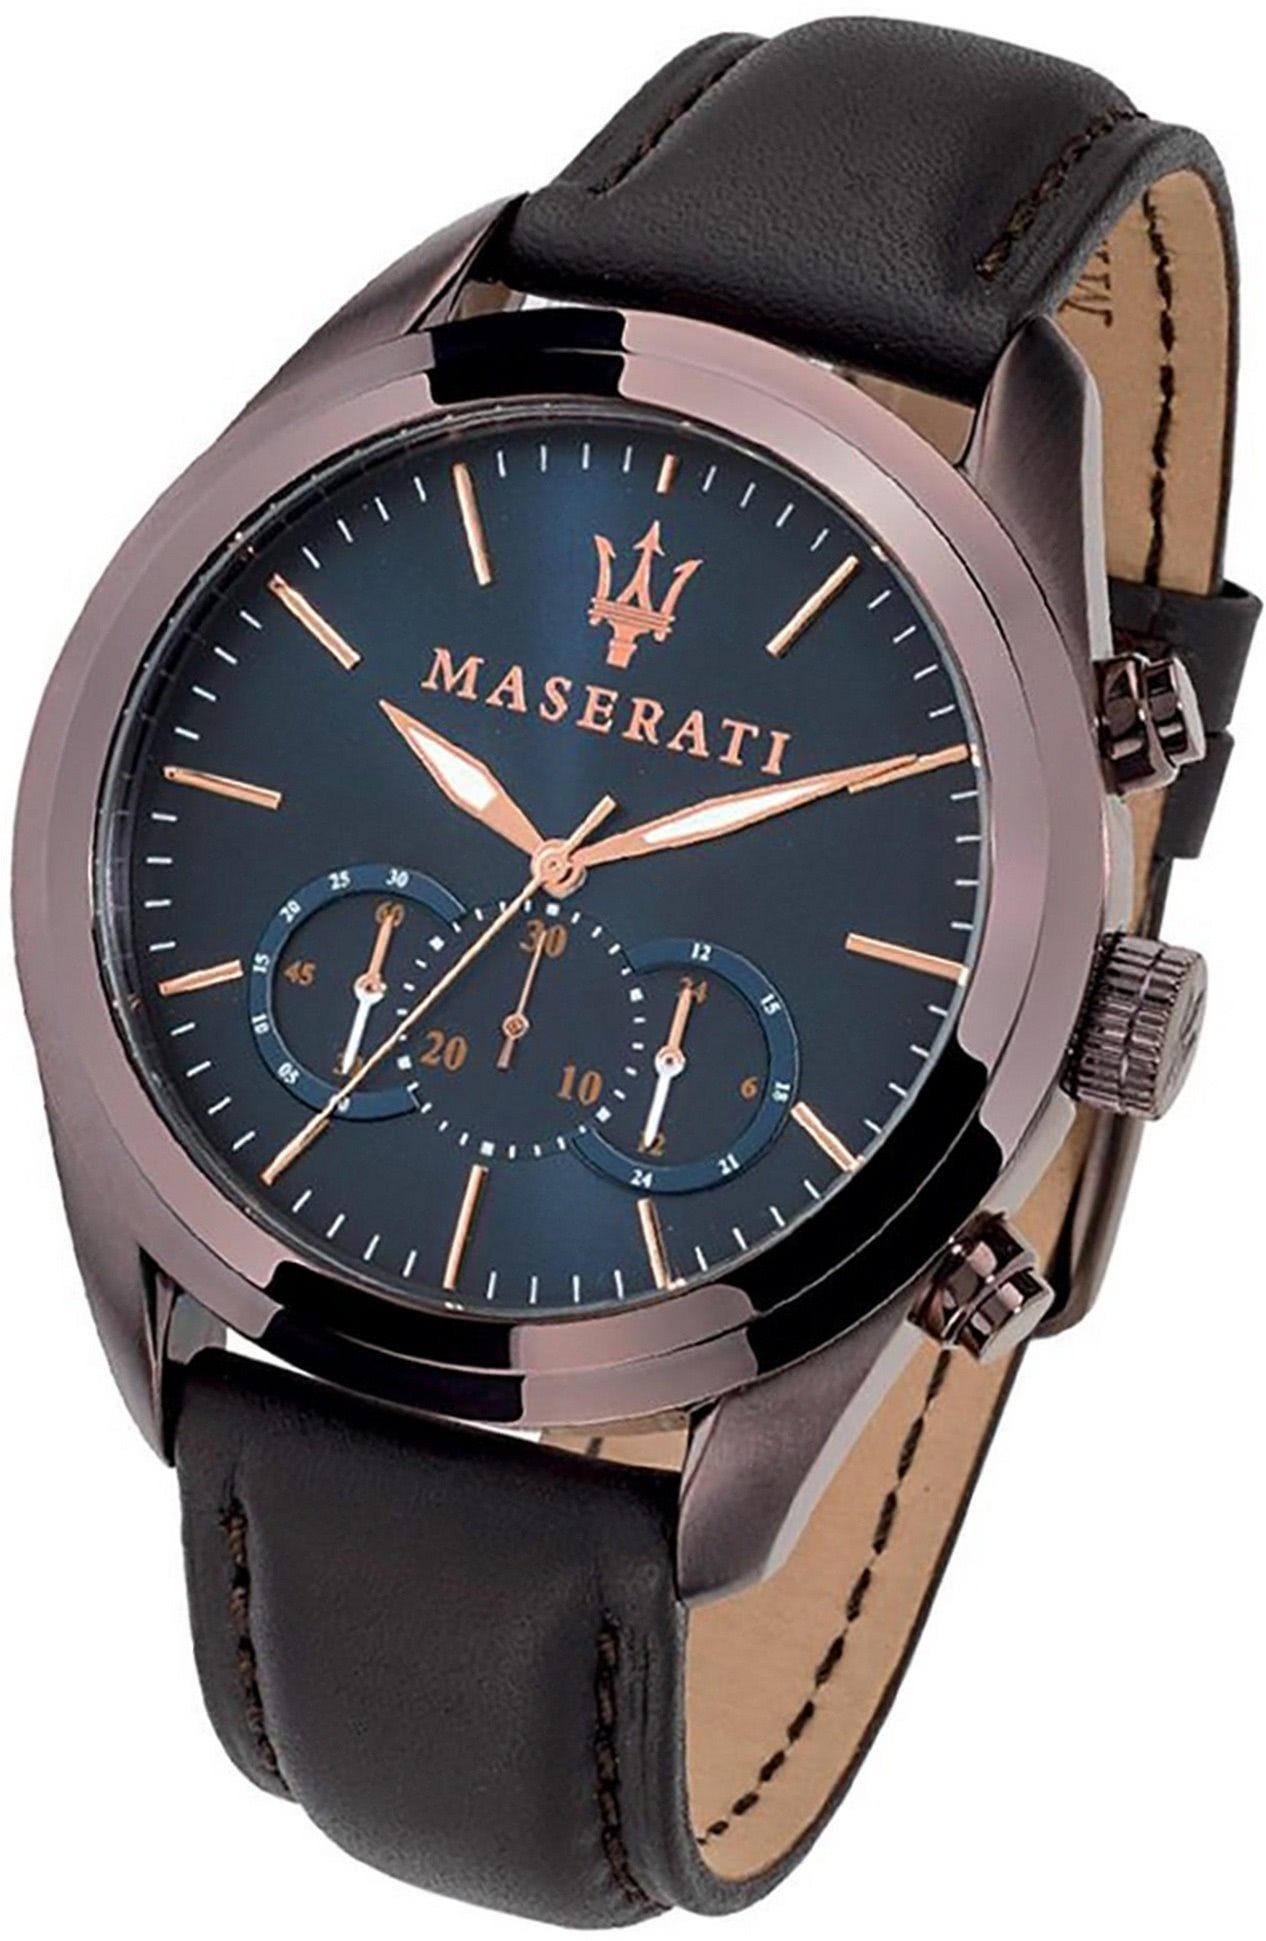 MASERATI Chronograph Maserati Leder Armband-Uhr, Herrenuhr Lederarmband, rundes Gehäuse, groß (ca. 55x45mm) blau